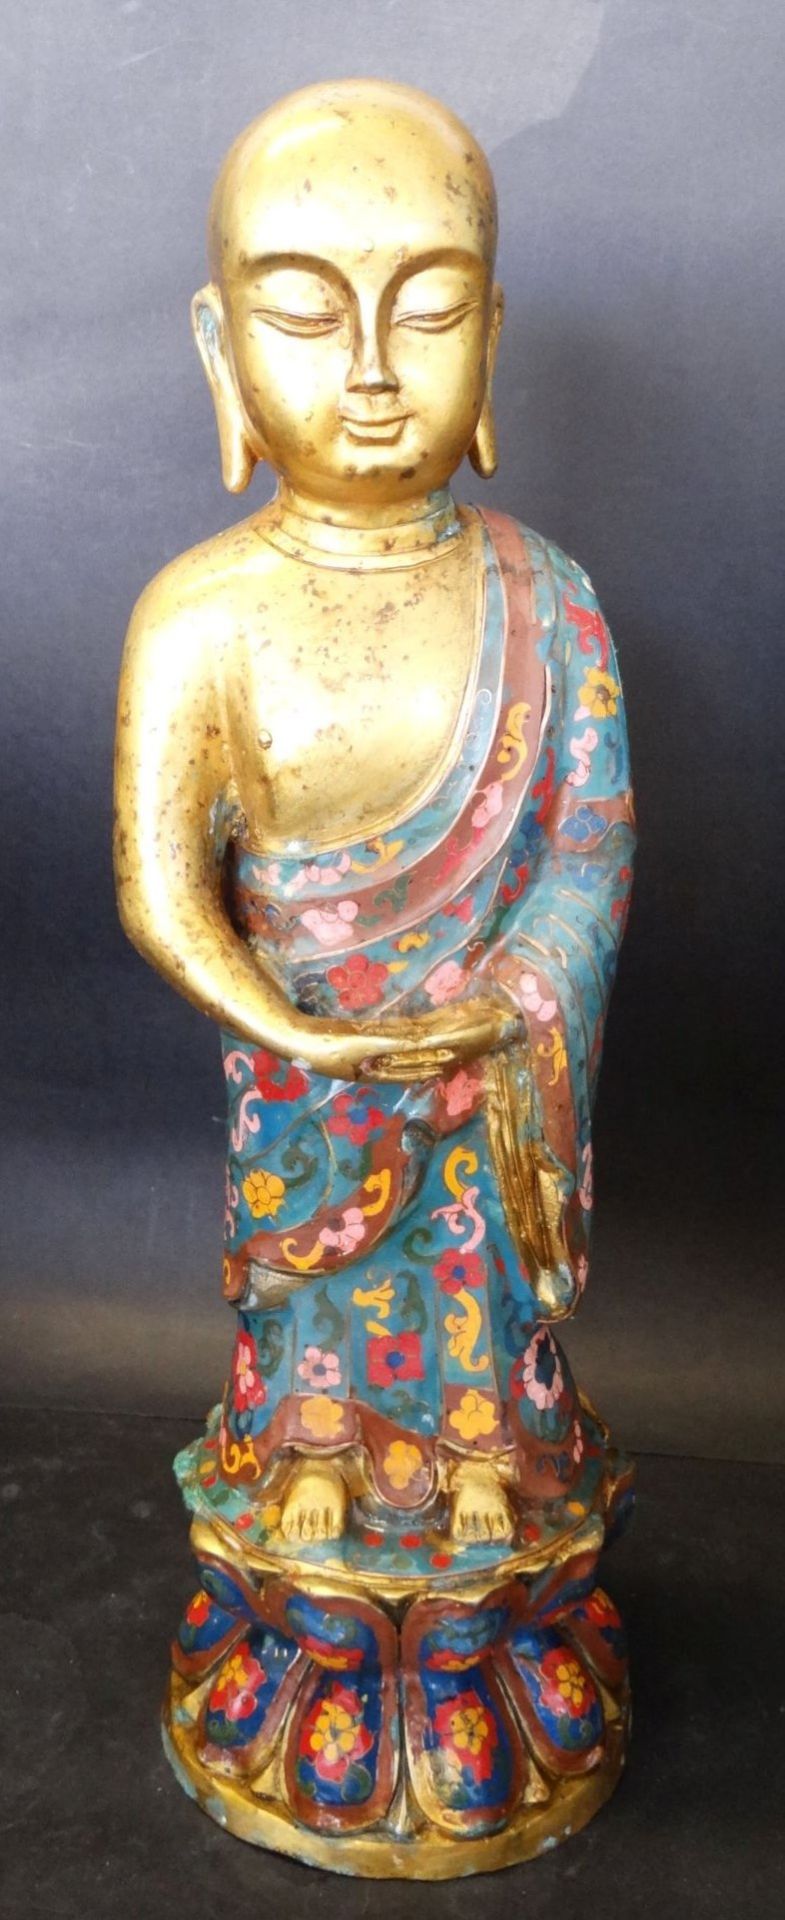 grosser, betender Bronze Buddha, floral bemalt, ungepflegter Kellerfund, fleckig und mit Grünspan,